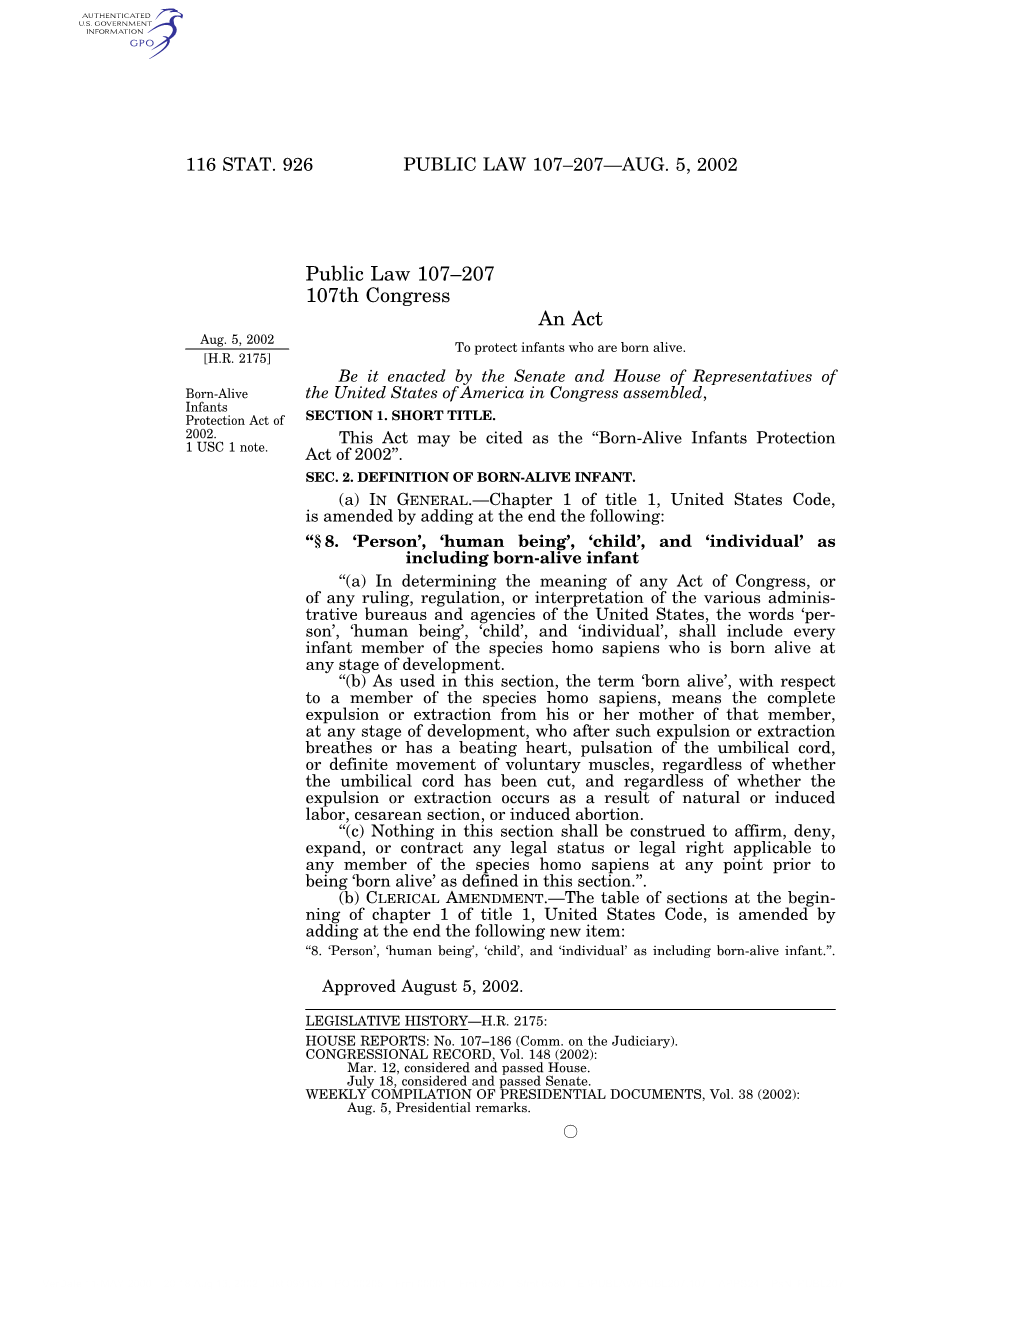 Public Law 107–207—Aug